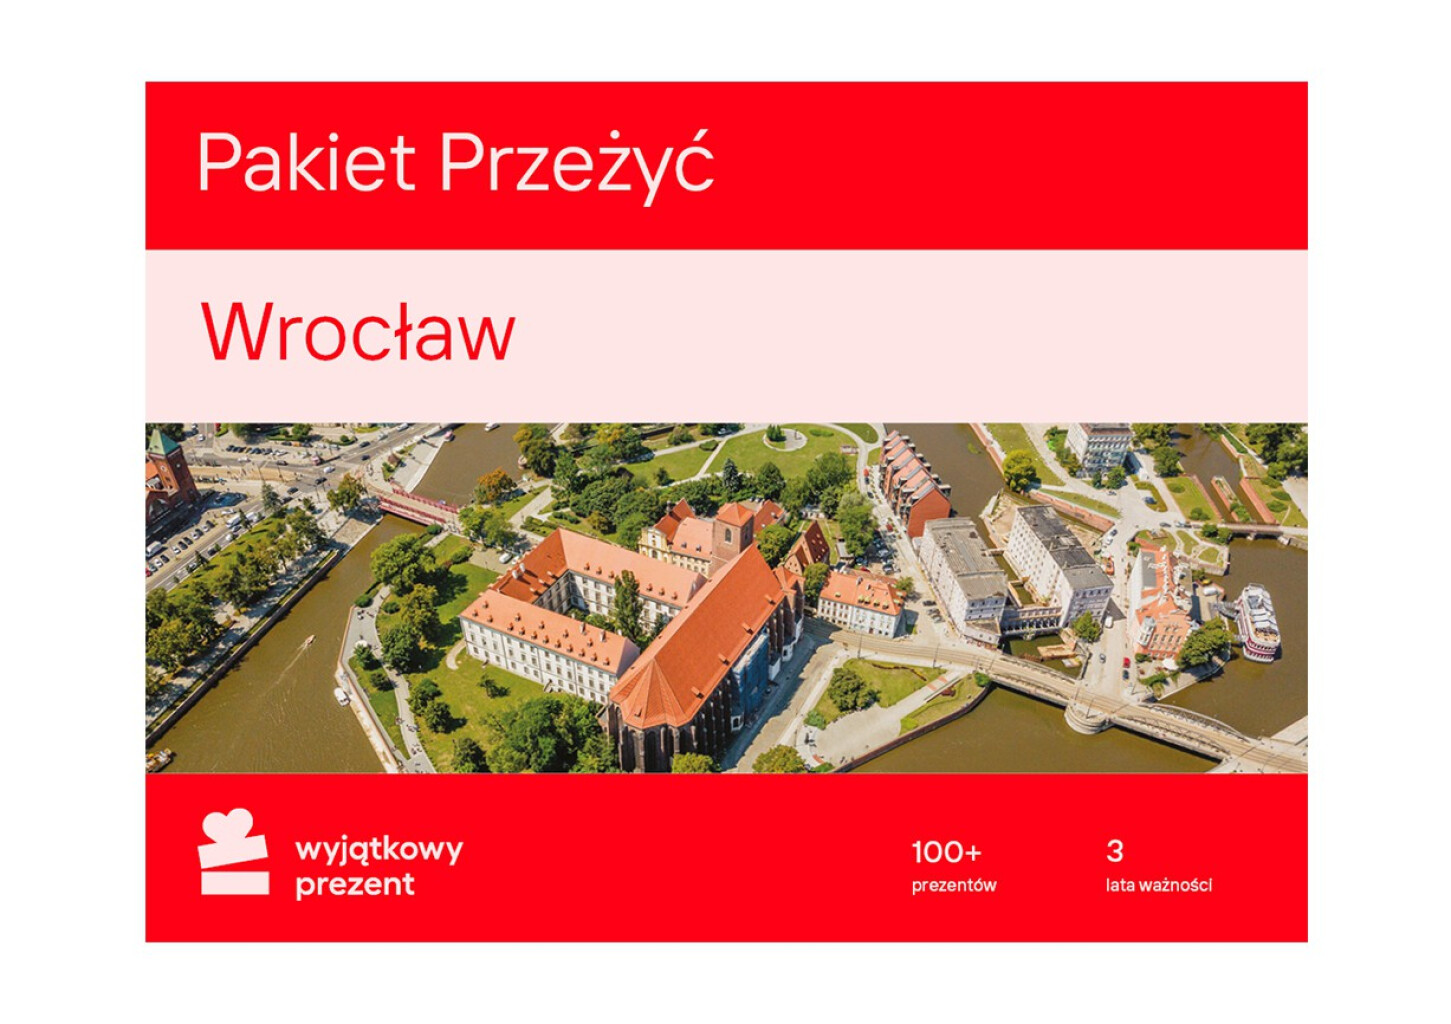 Pakiet Przeżyć Wrocław